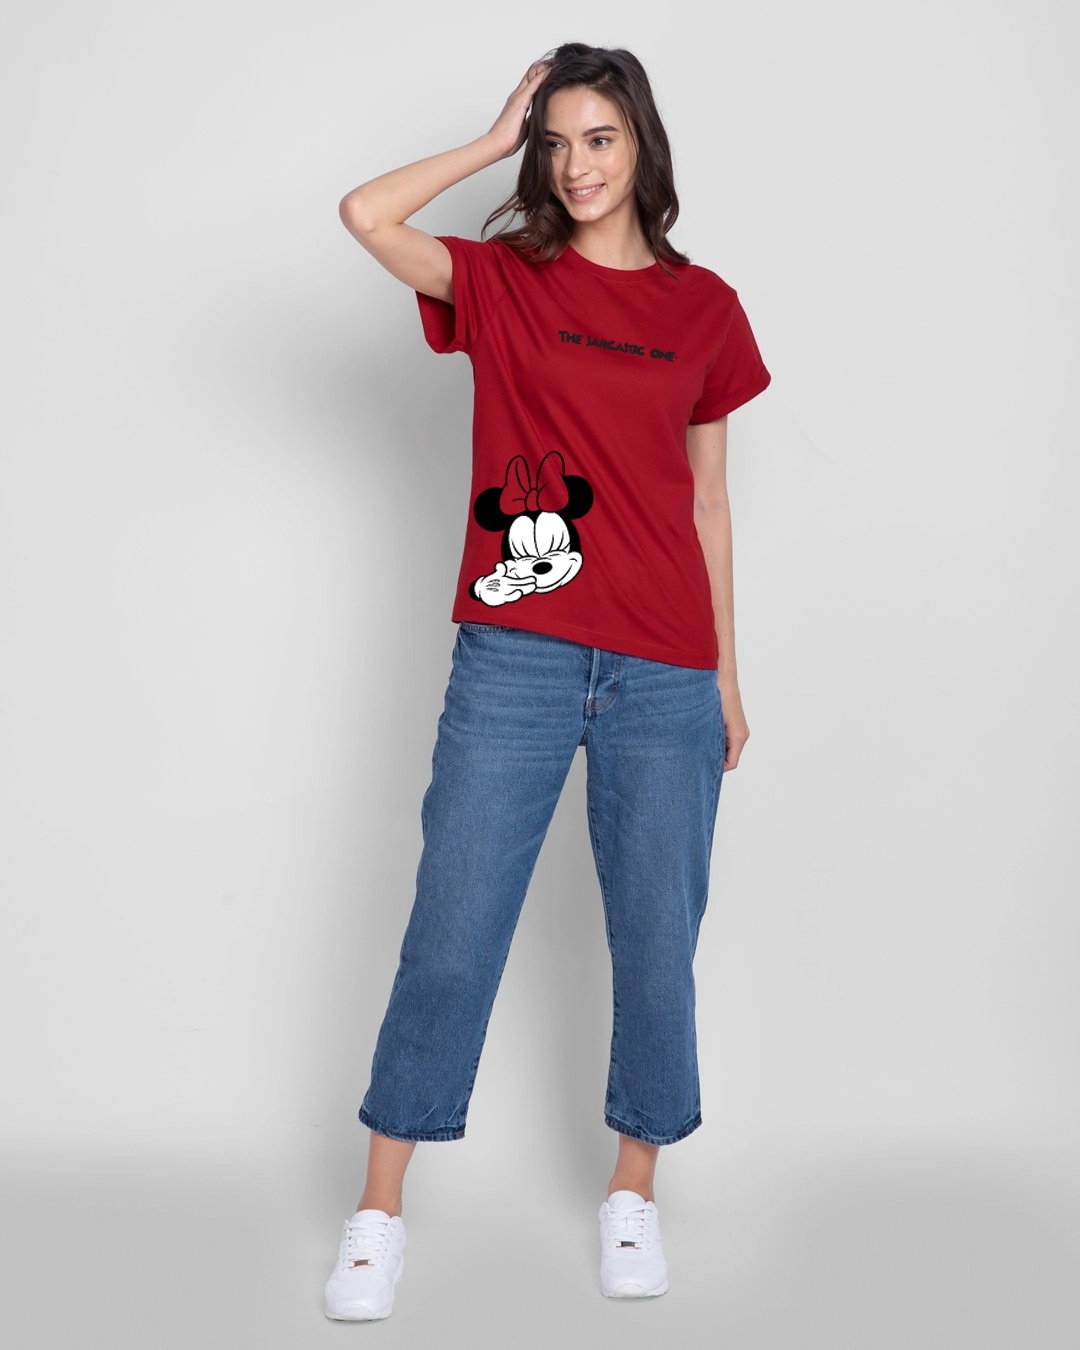 Shop Sarcastic One Boyfriend Women's T-shirt (DL)-Design